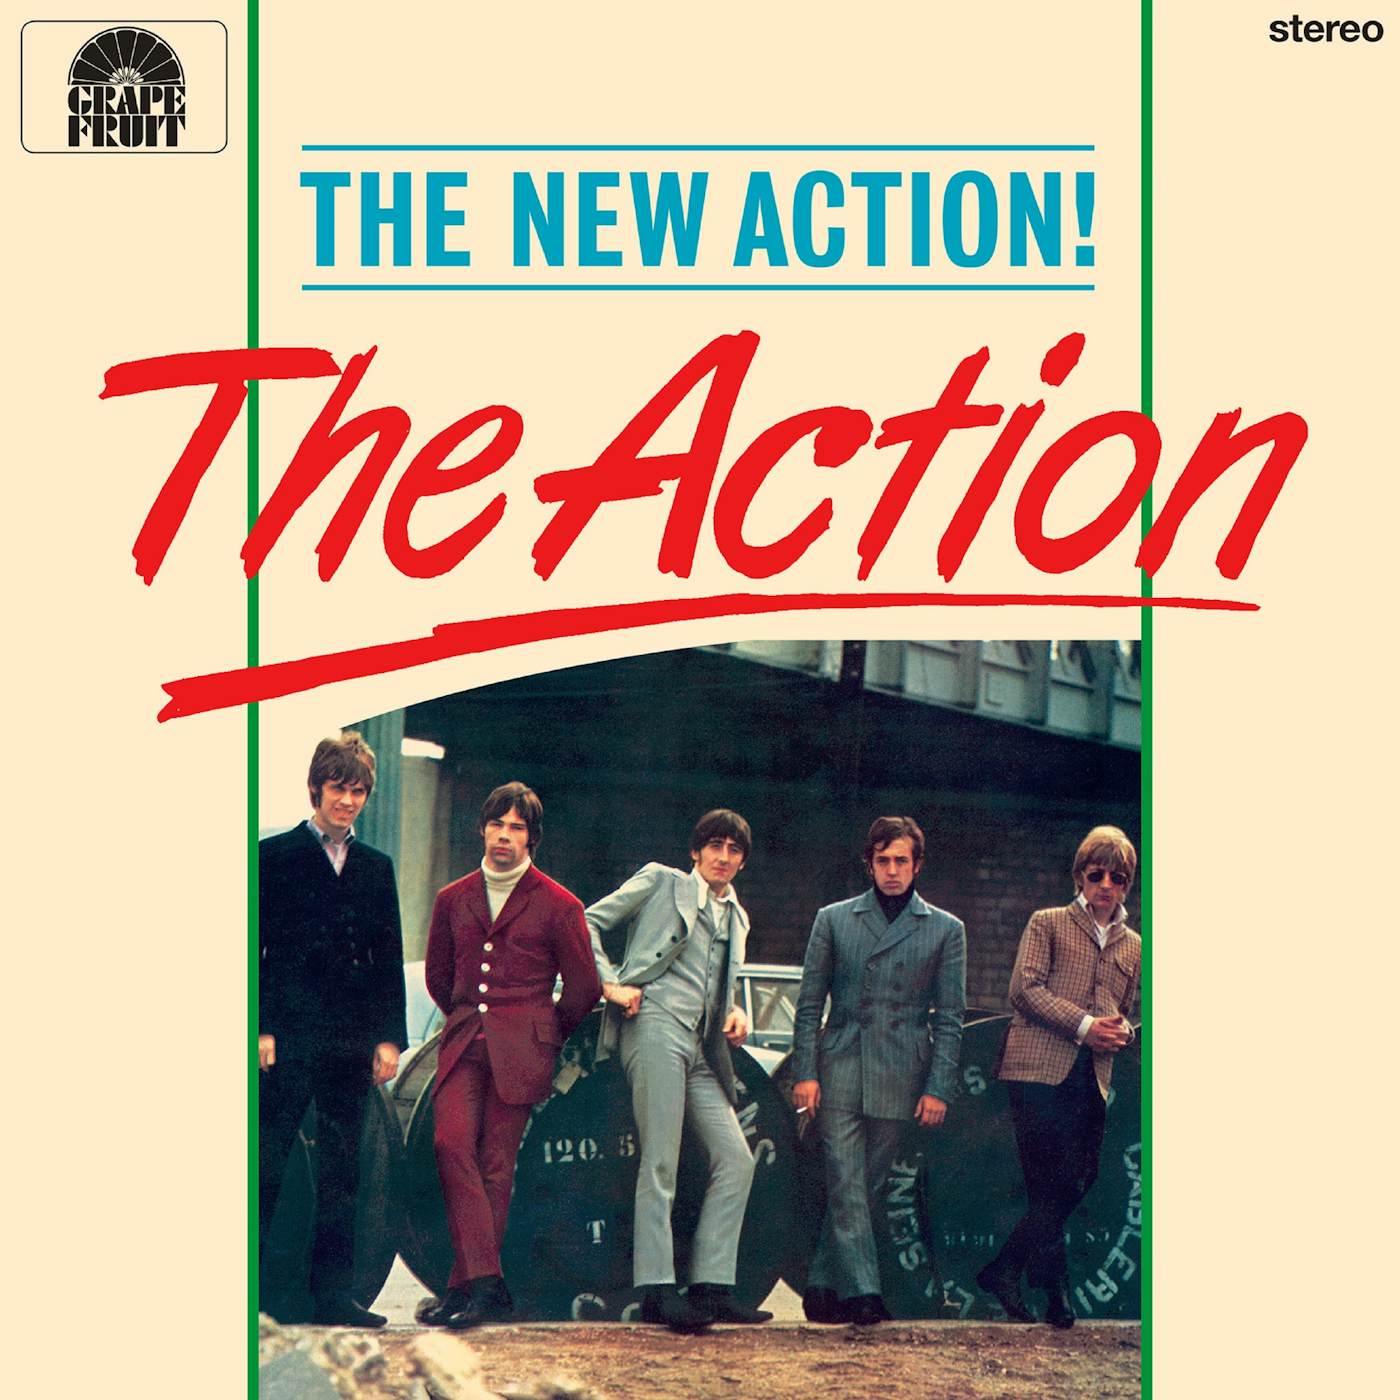 NEW ACTION Vinyl Record